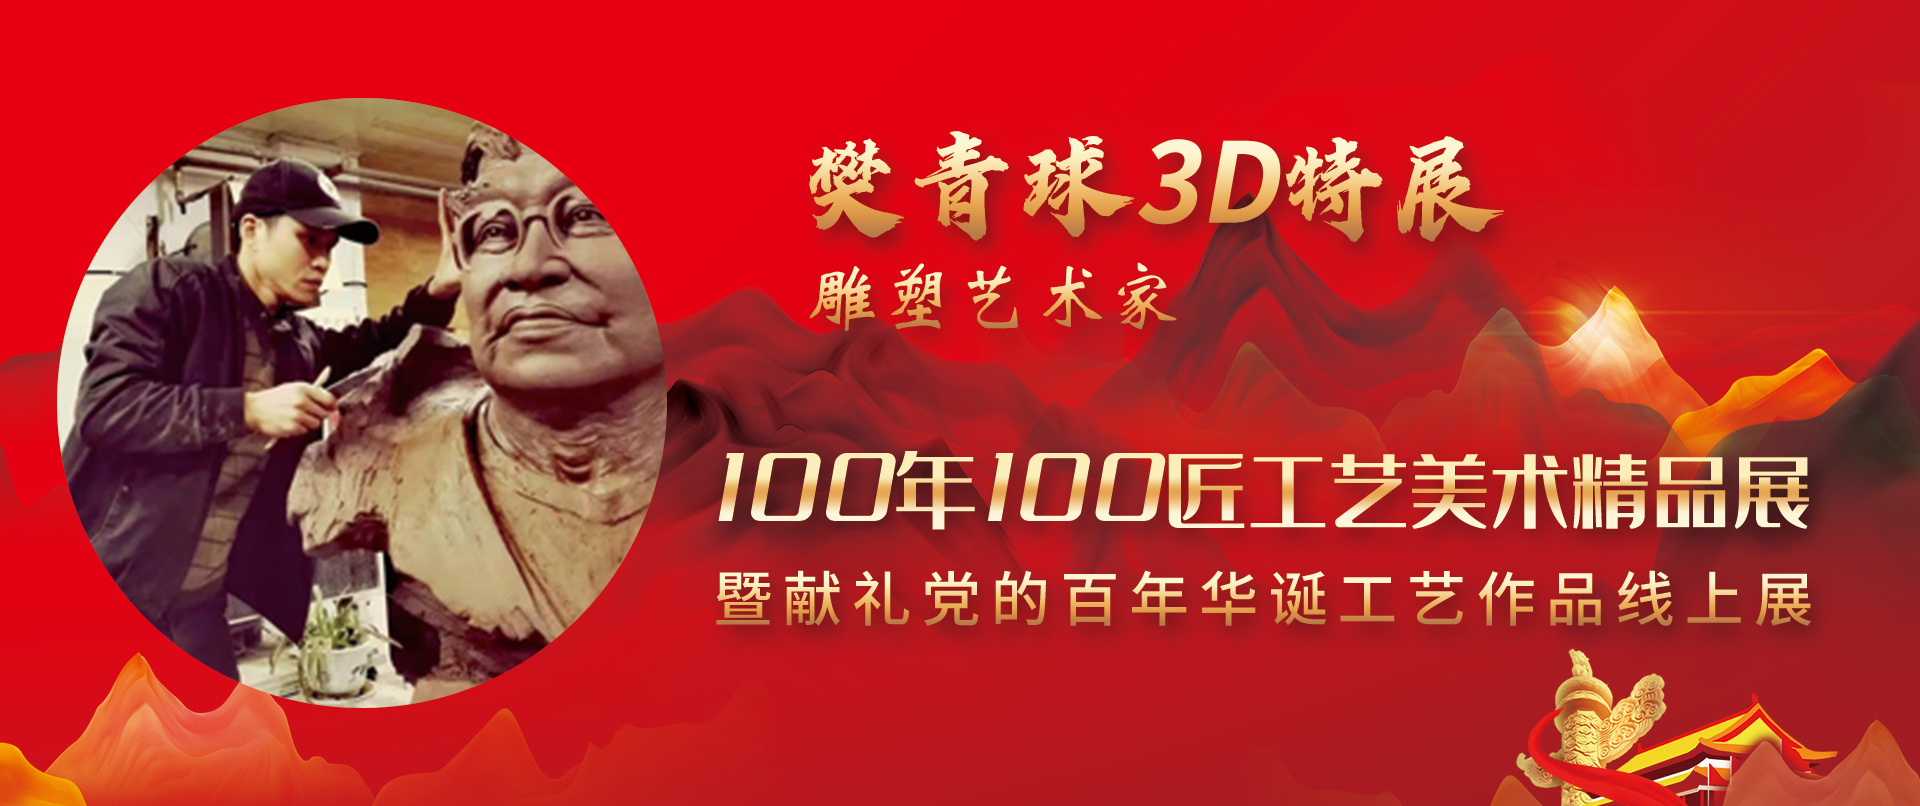 樊青球3D特展-100年100匠工艺美术精品展